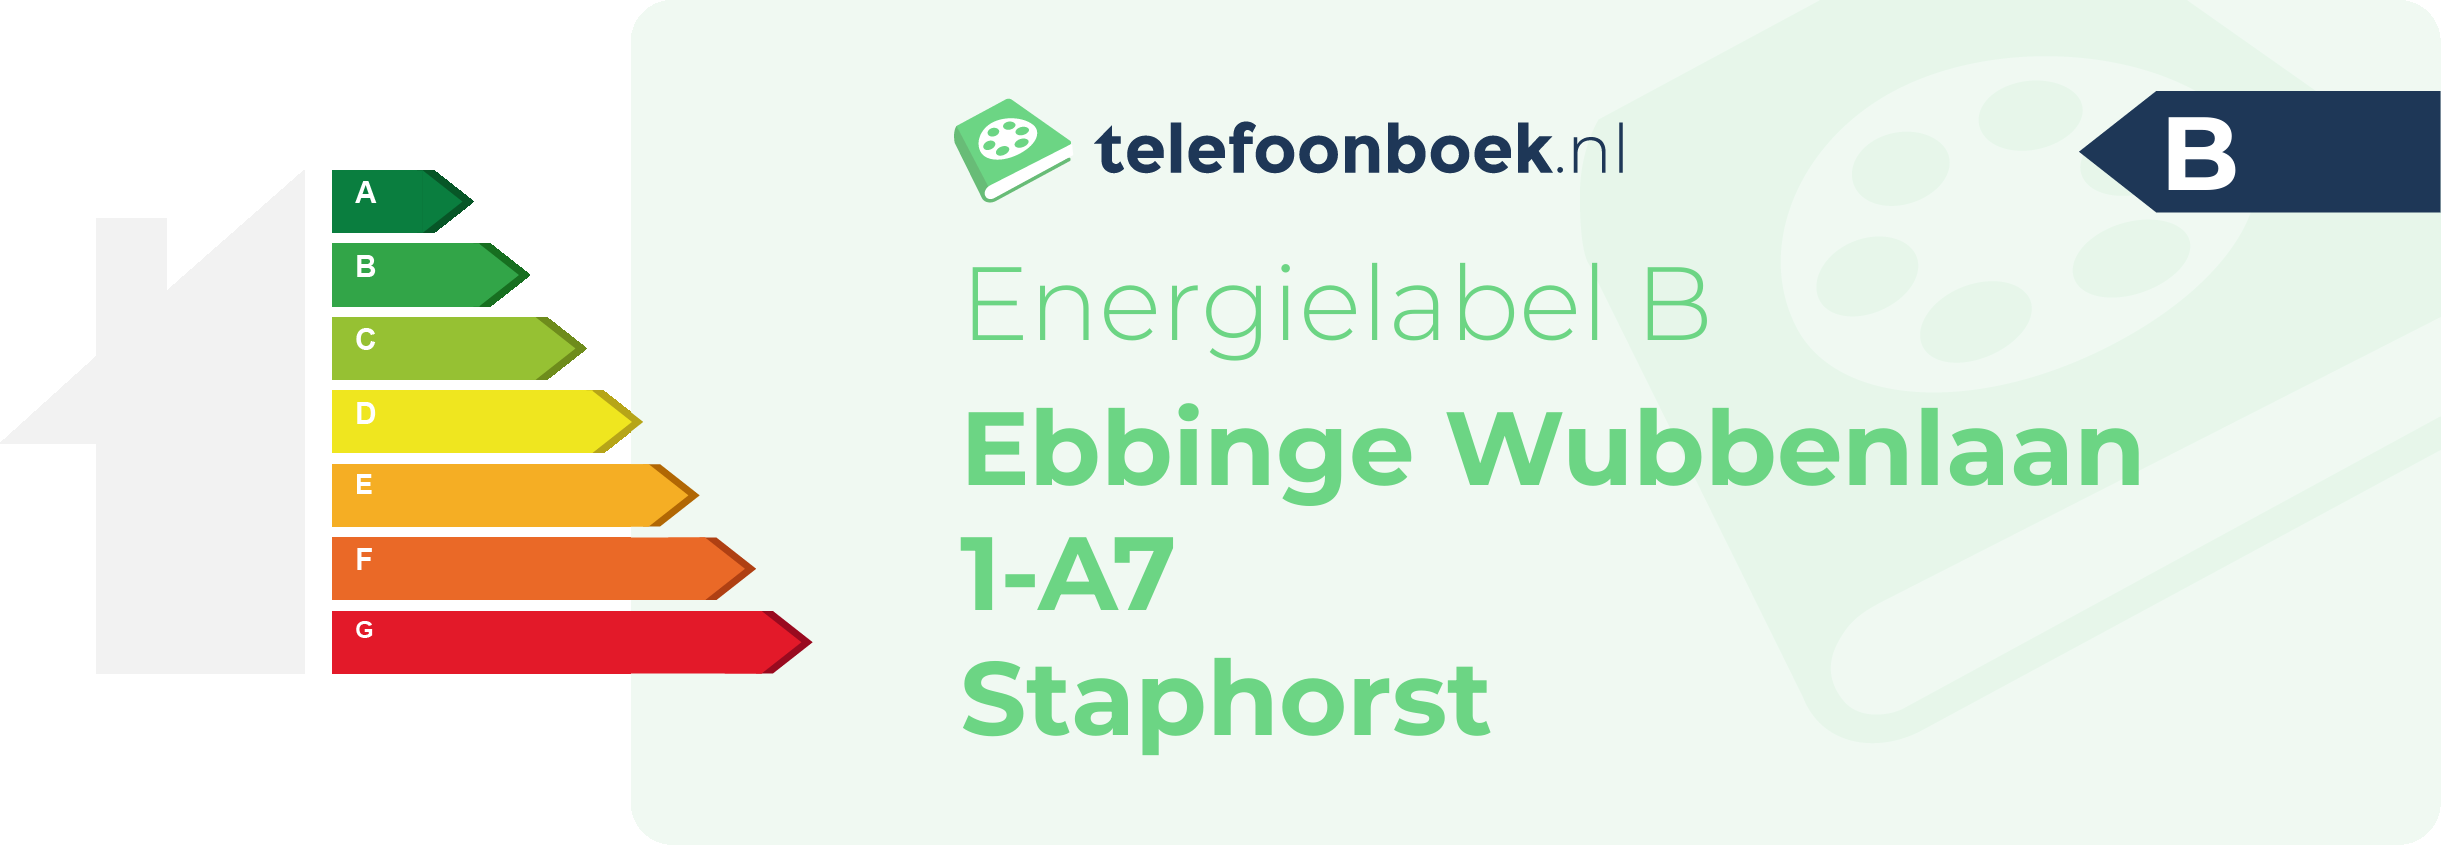 Energielabel Ebbinge Wubbenlaan 1-A7 Staphorst